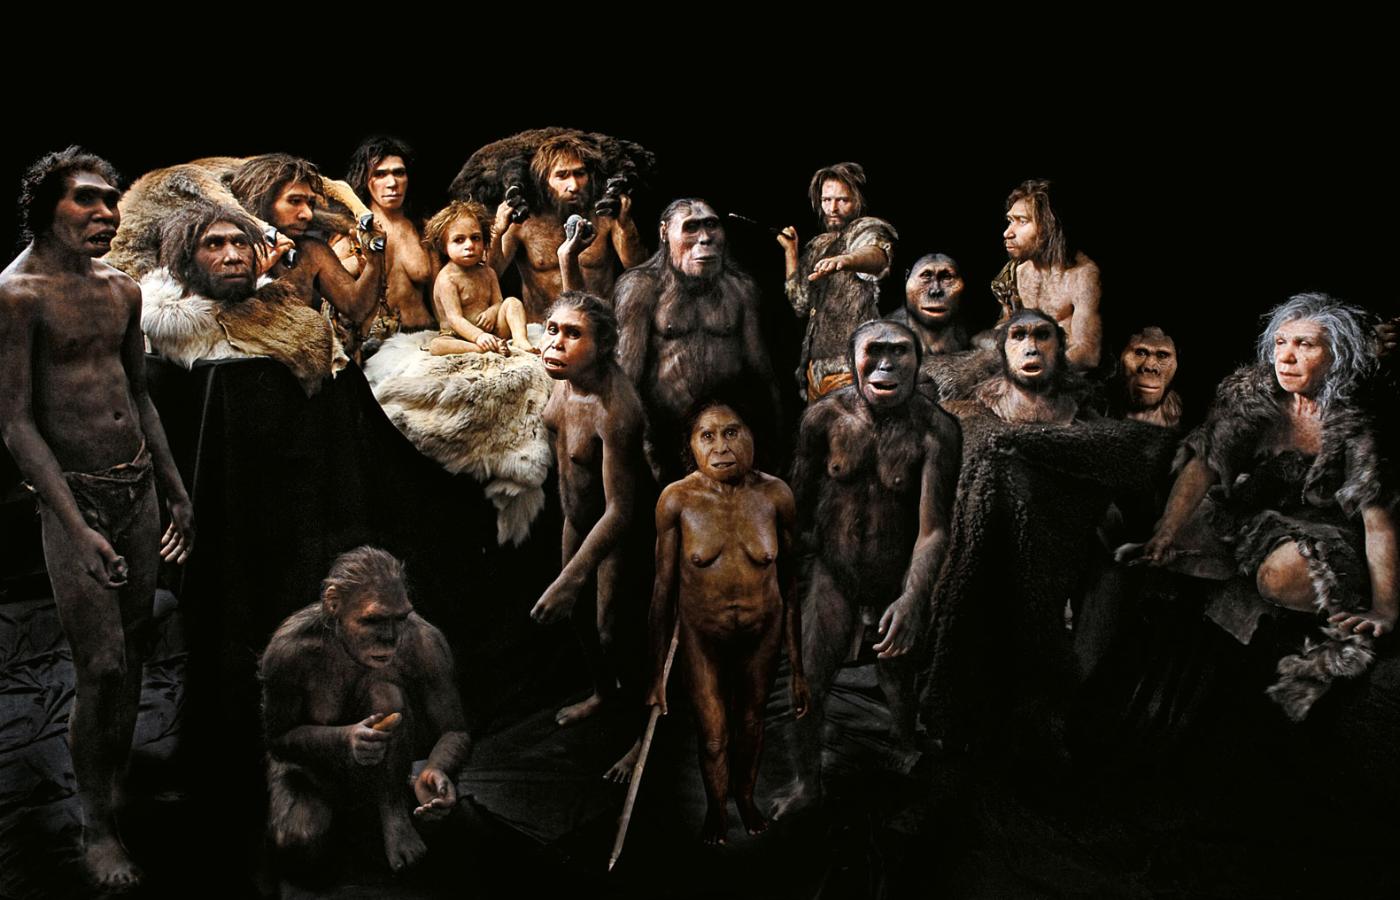 Modele antropologiczne oparte na skamielinach. Od lewej: Homo ergaster, Homo georgicus (mężczyzna), grupa neandertalczyków, w tym dziecko, Homo georgicus (kobieta, rzuca kamień), Homo floresiensis (trzyma włócznię), Lucien i Lucy (Australopithecus afarensis), myśliwy z Cro-Magnon (rzuca włócznią), trzy głowy – Paranthropus boisei, Sahelanthropus tchadensis, Australopithecus africanus), mężczyzna i kobieta neandertalczycy. Na dole po lewej: samica Homo habilis (kuca).